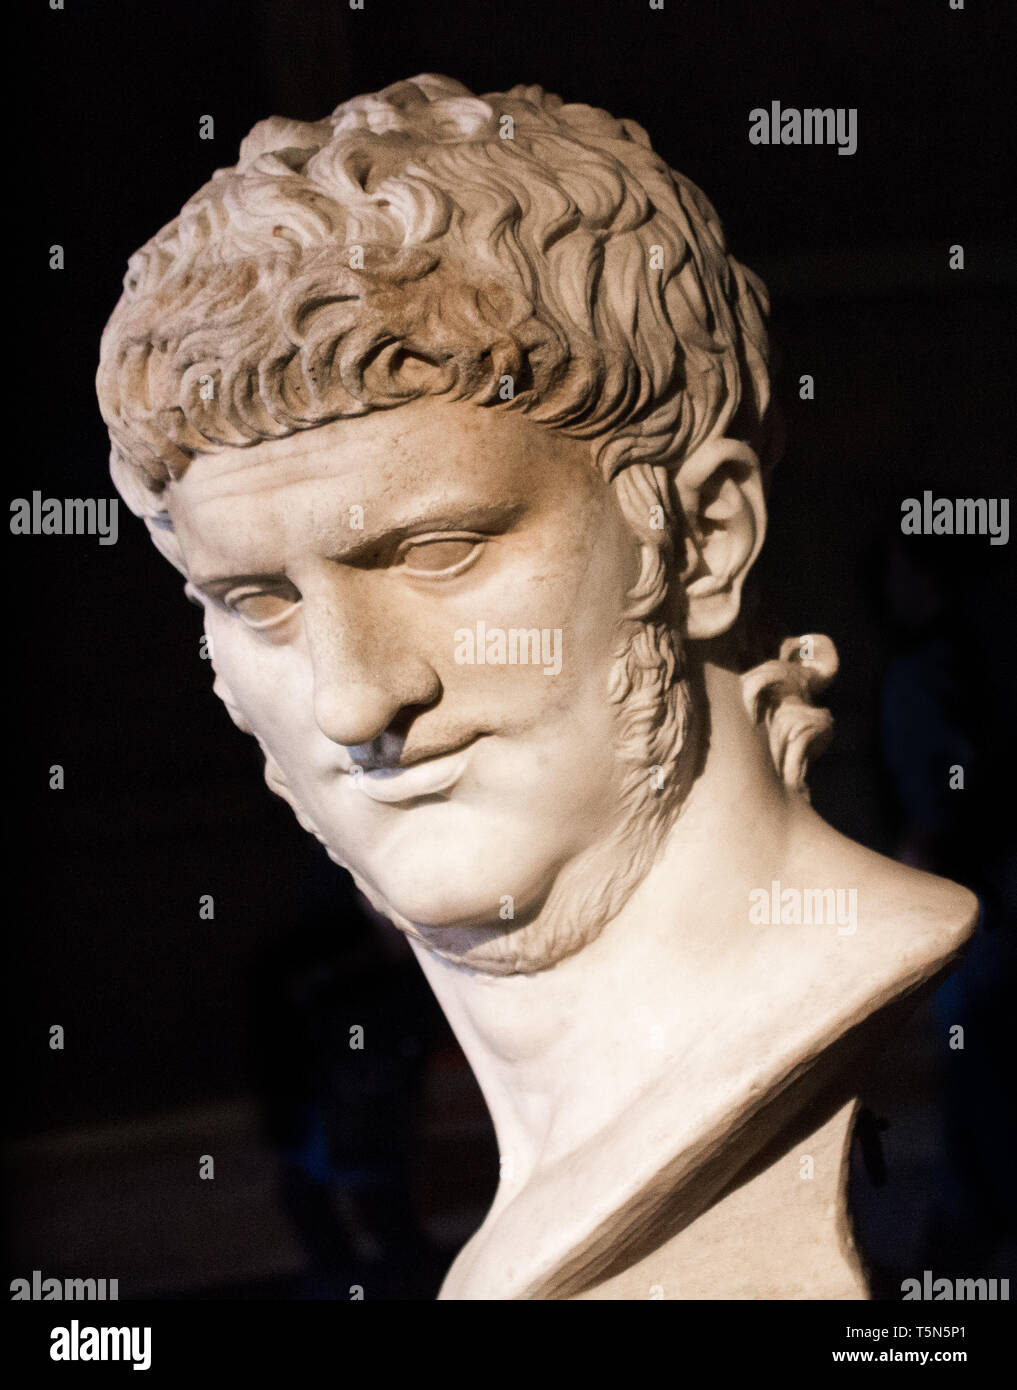 Buste en marbre de l'empereur Néron dans la Salle des Empereurs. Curie de Forum Romain, Rome Italie Banque D'Images